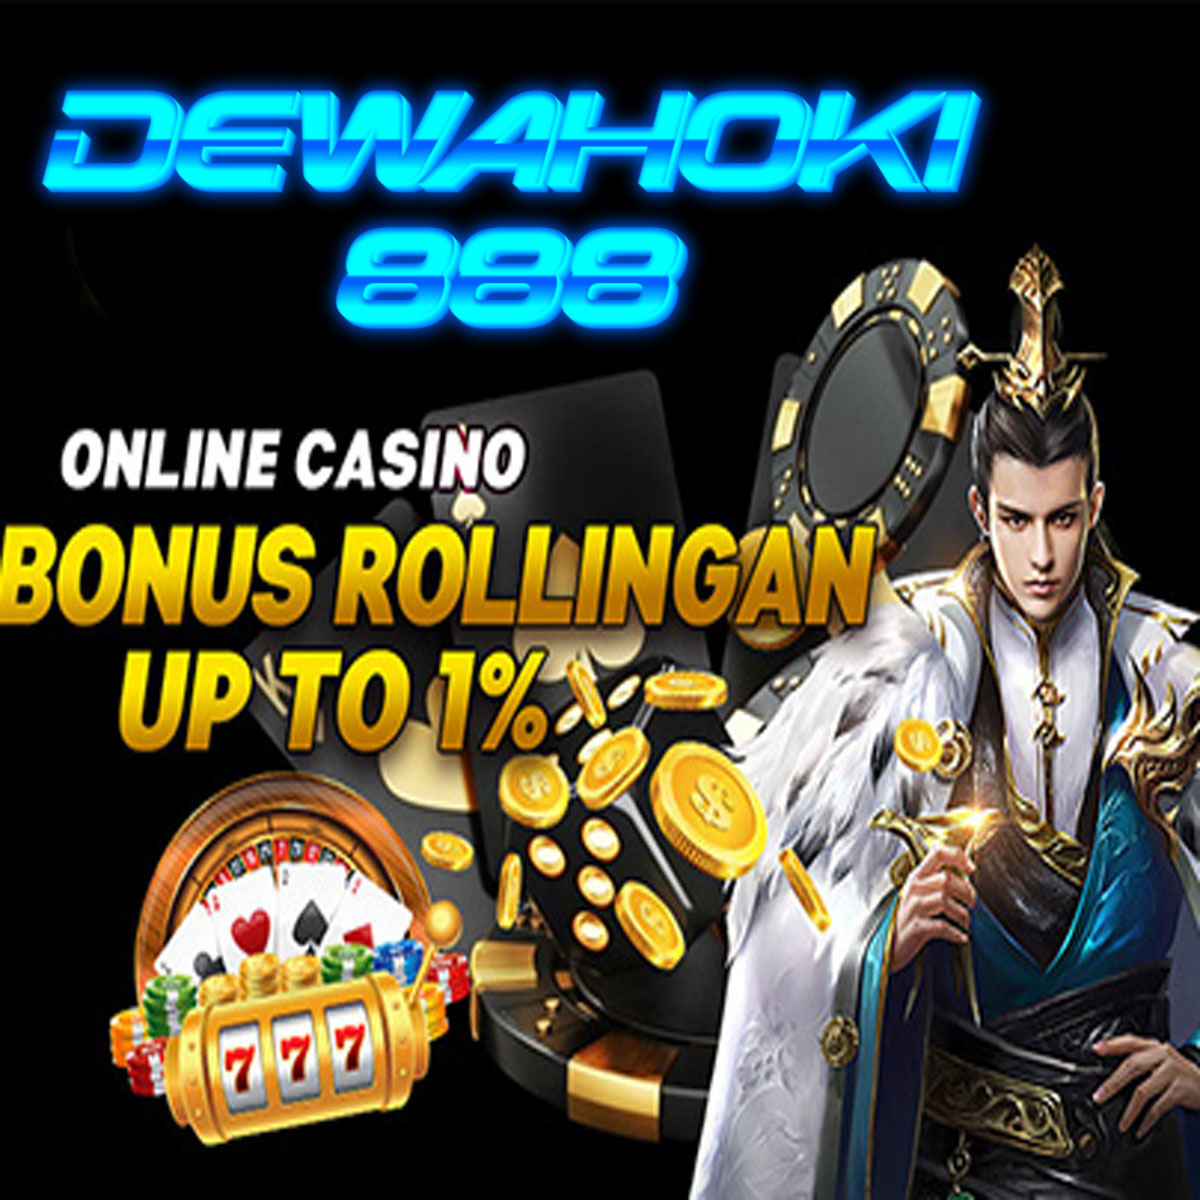 DEWAHOKI888 bonus rollingan casino hingga 1% !